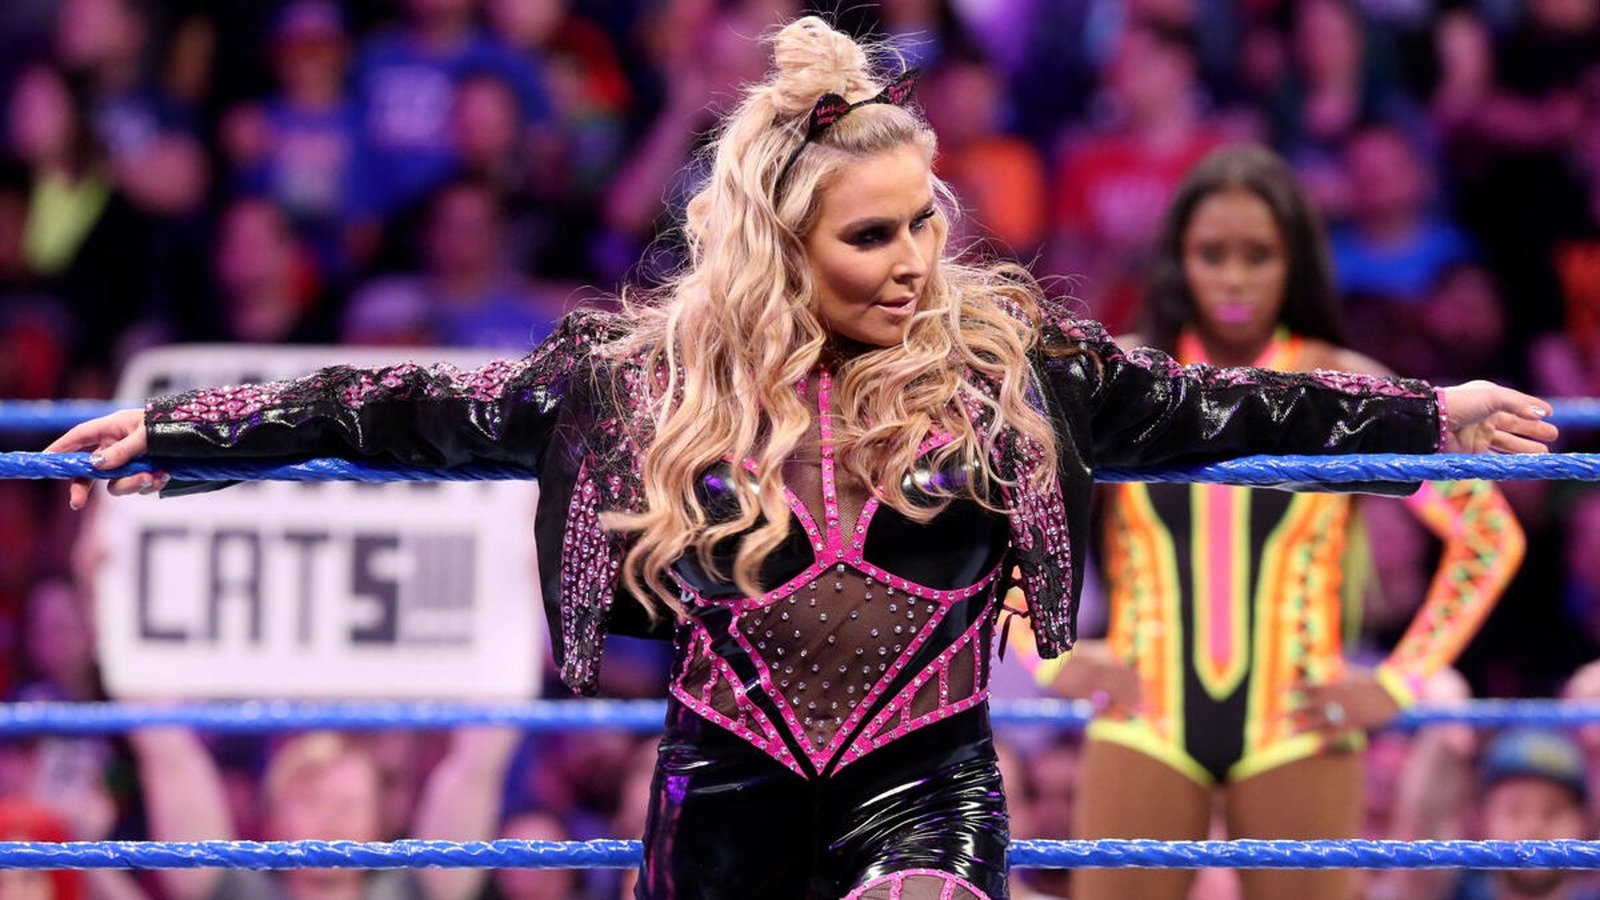 Natalya evalúa la división femenina de la WWE tras las acusaciones de Vince McMahon